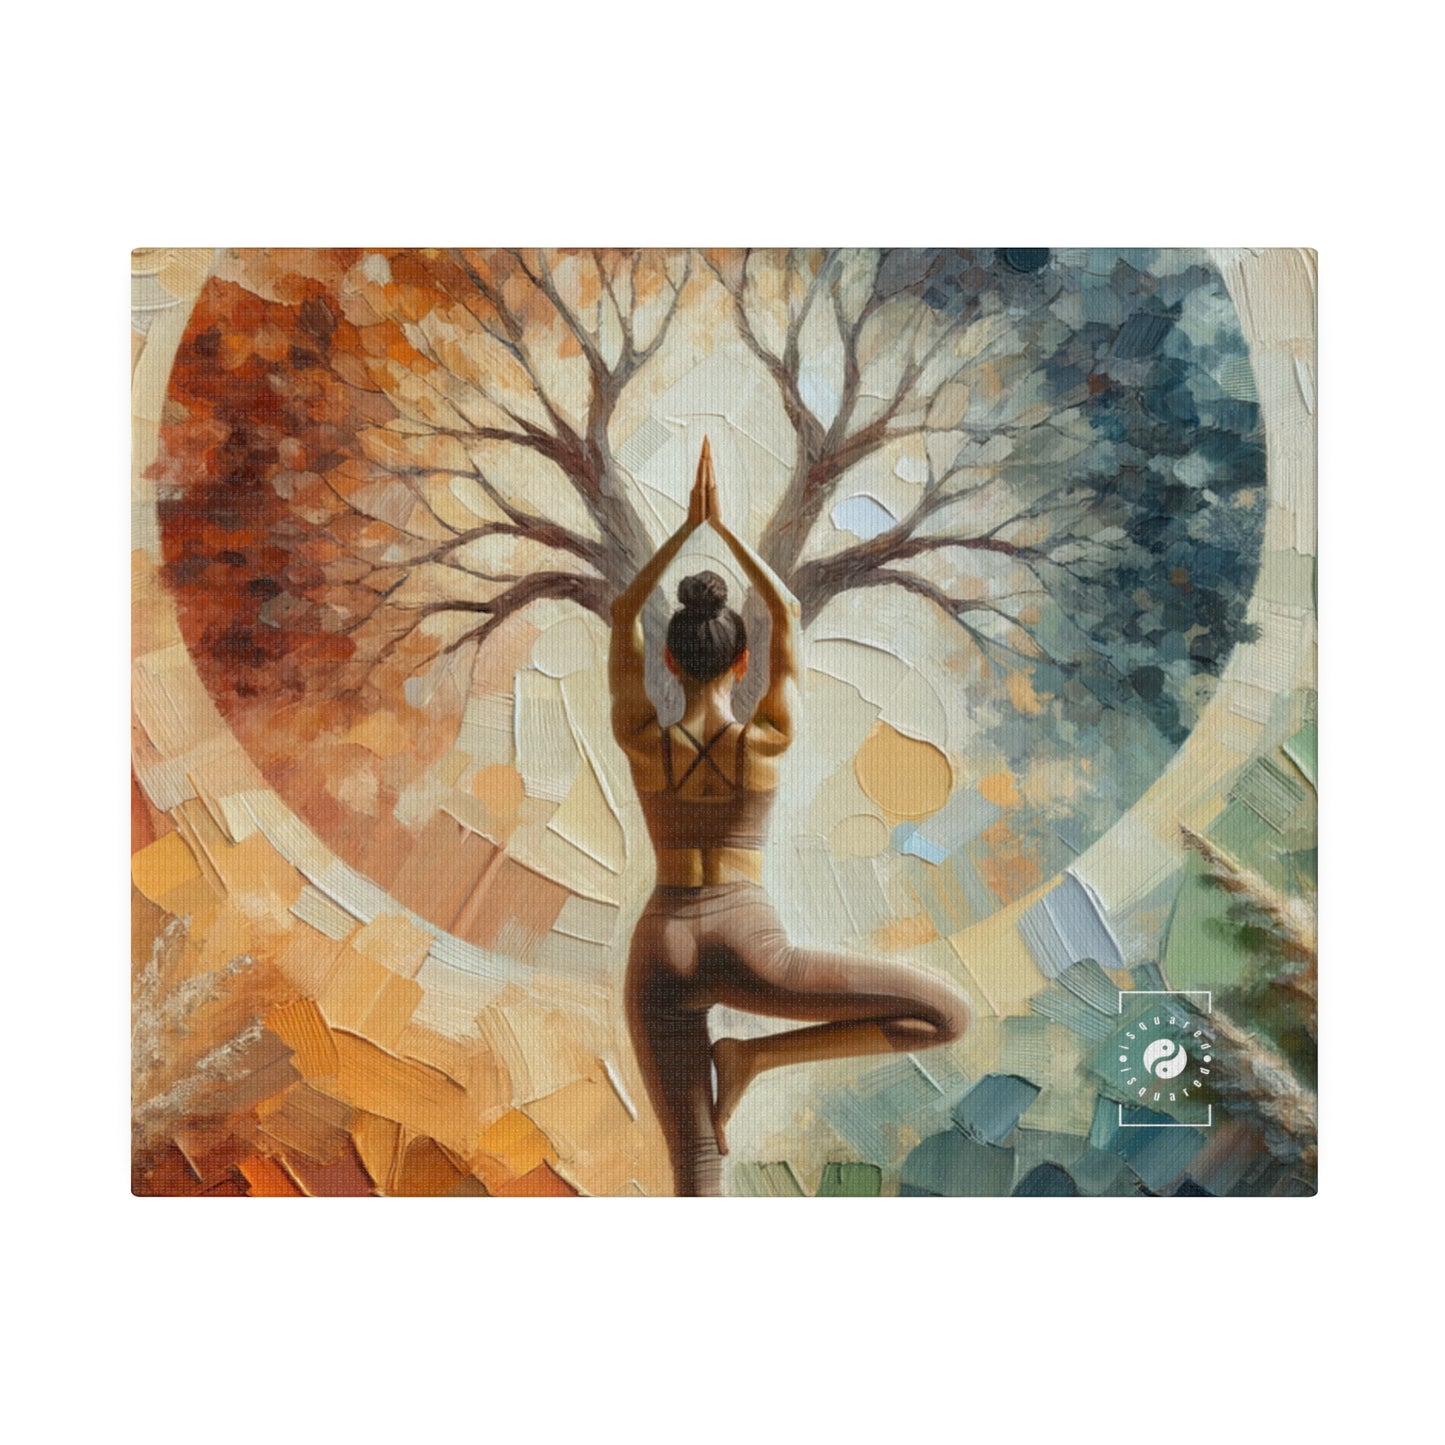 « Stabilité dans la reddition : Vrikshasana en harmonie avec la Terre » – Impression sur toile